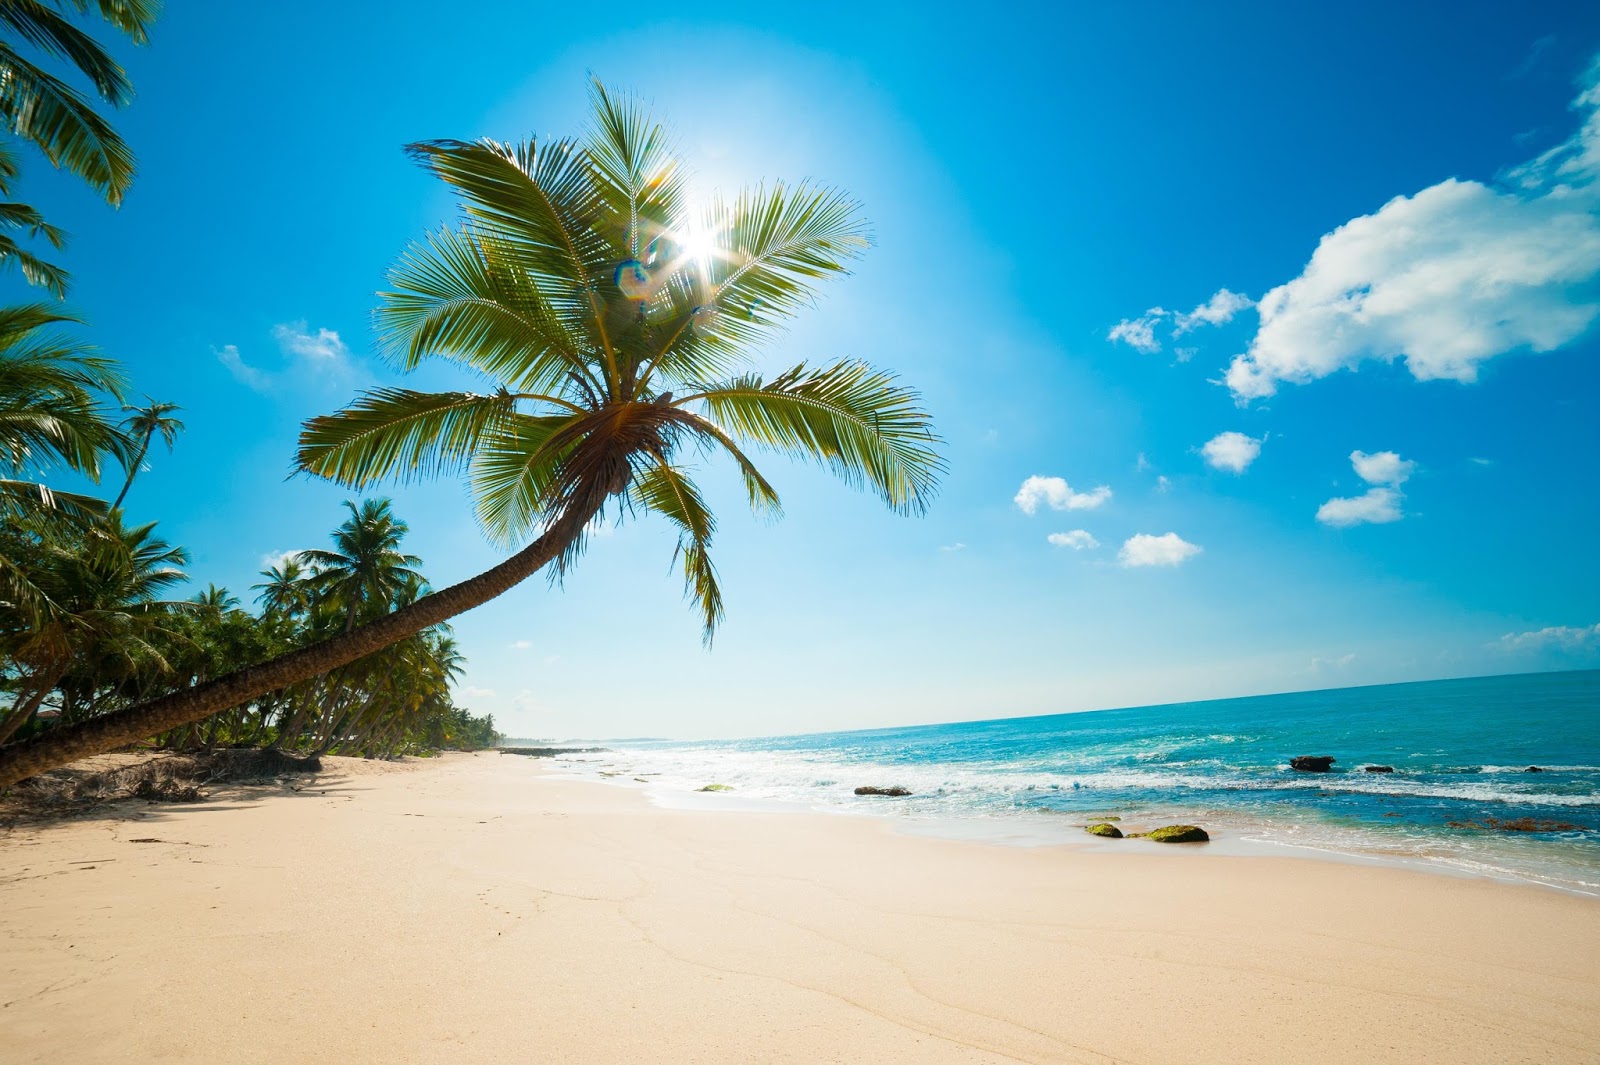 Banco de Imágenes Gratis: 10 fotos de playas tropicales para tus